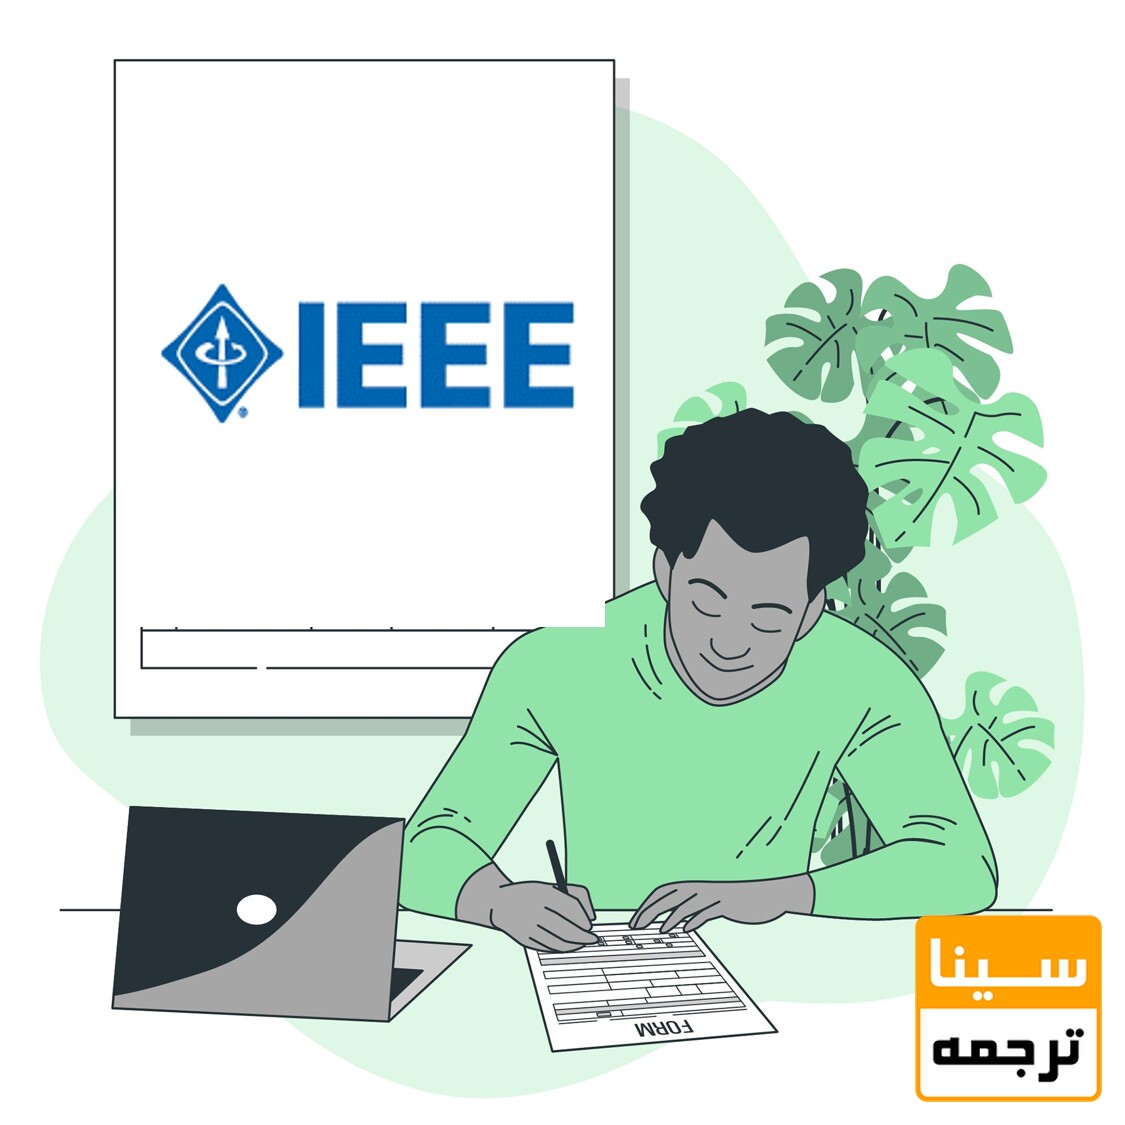 رفرنس نویسی به روش IEEE